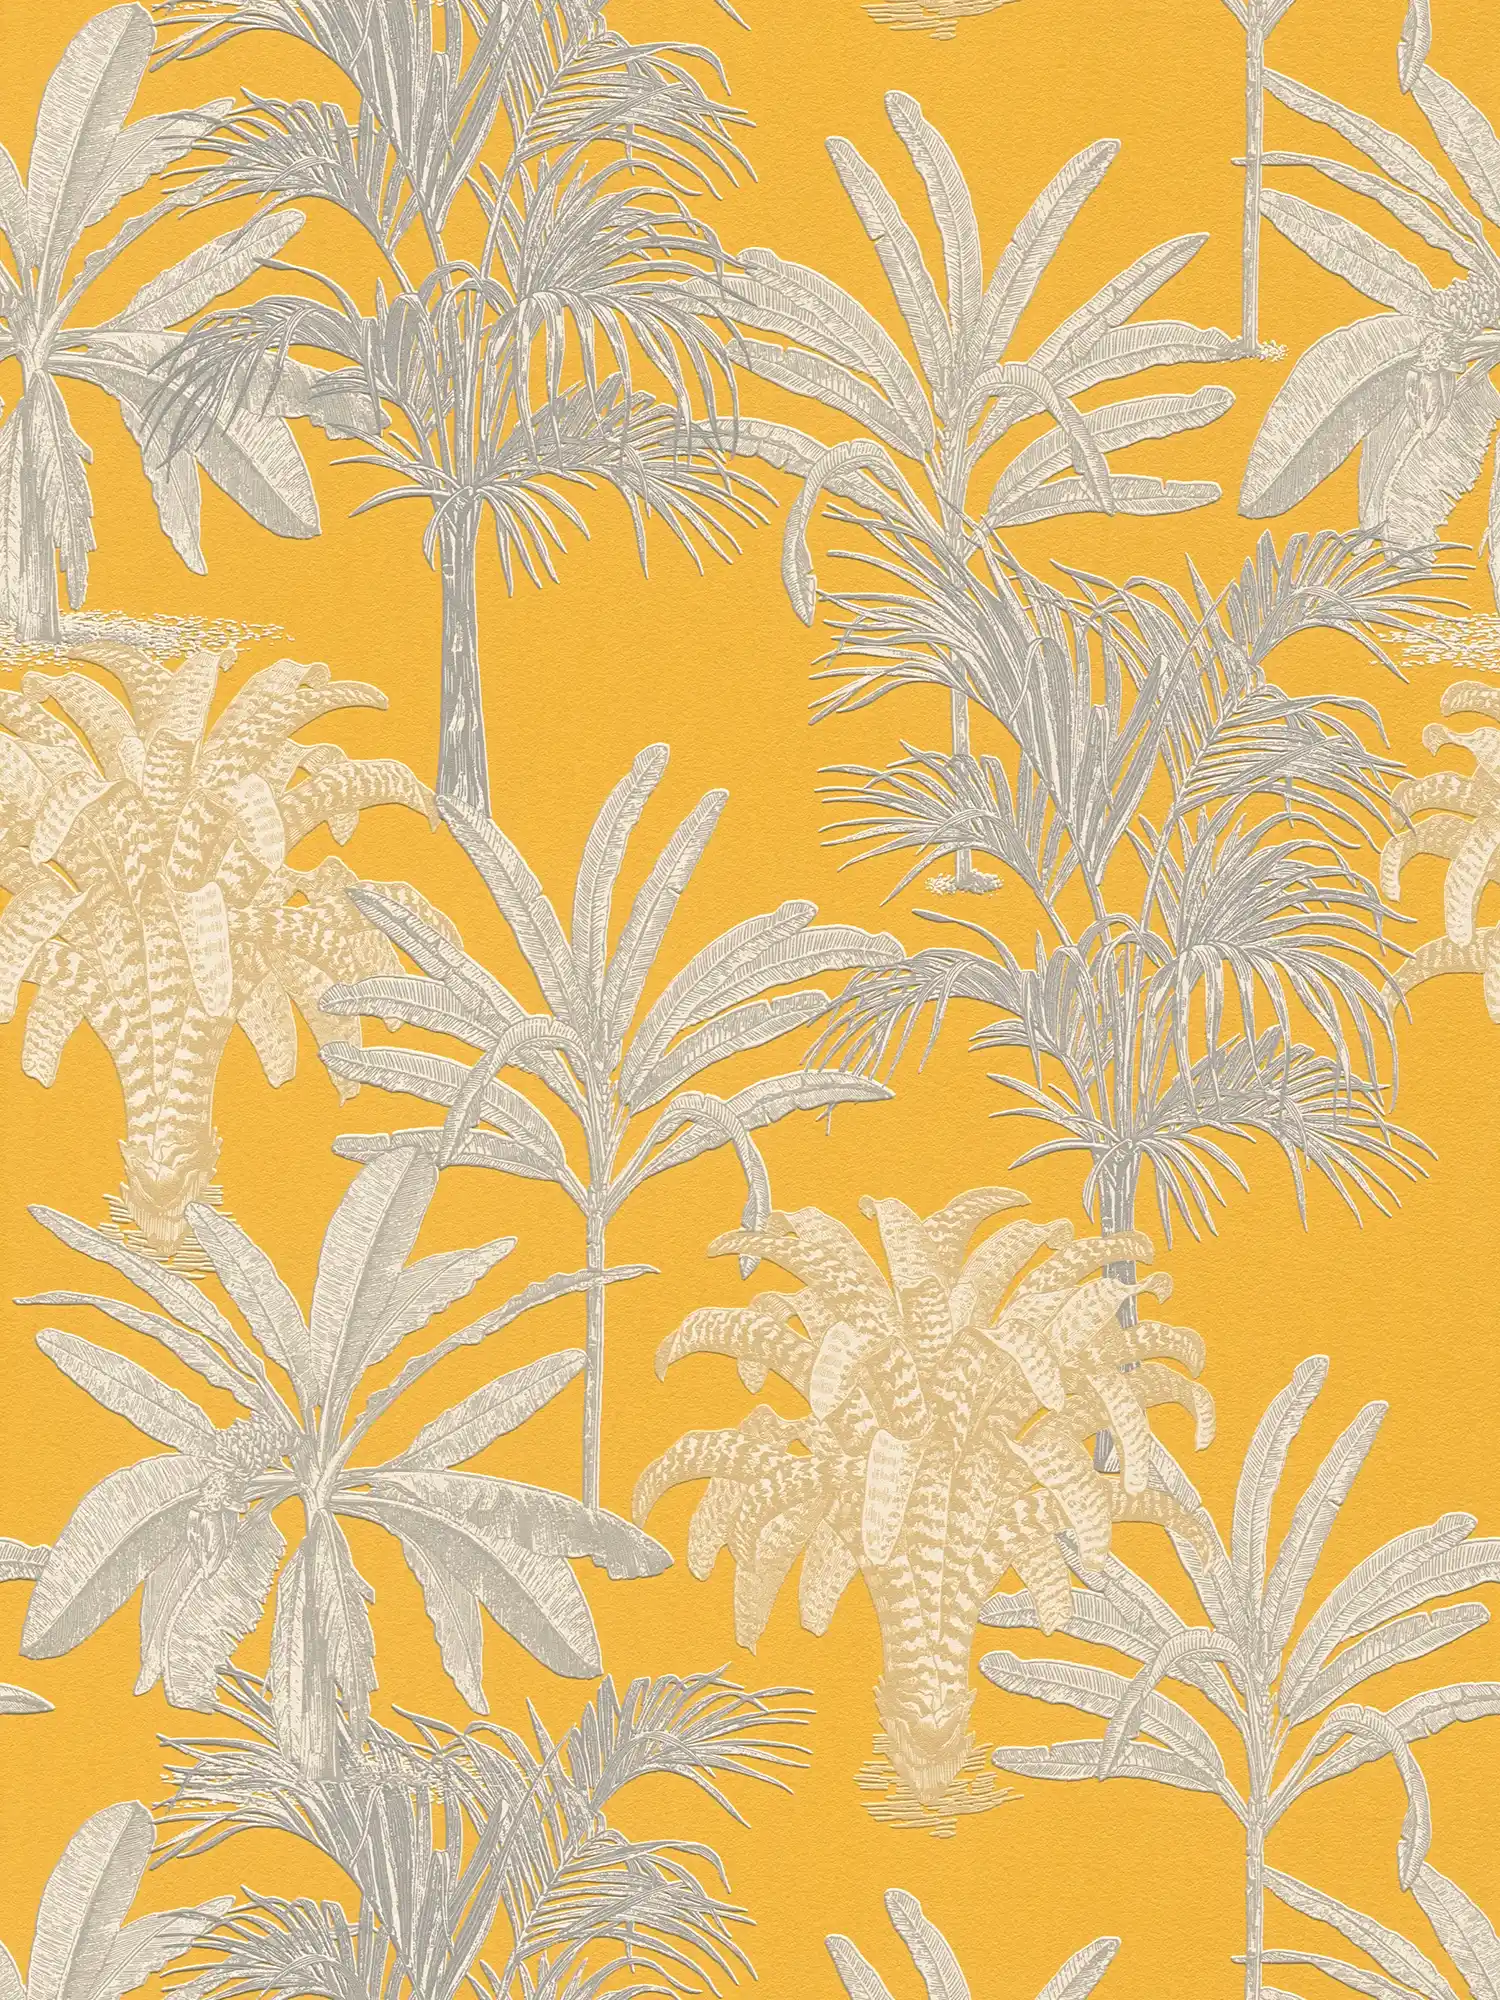 Papier peint palmier jaune moutarde avec motifs structurés - jaune, gris
